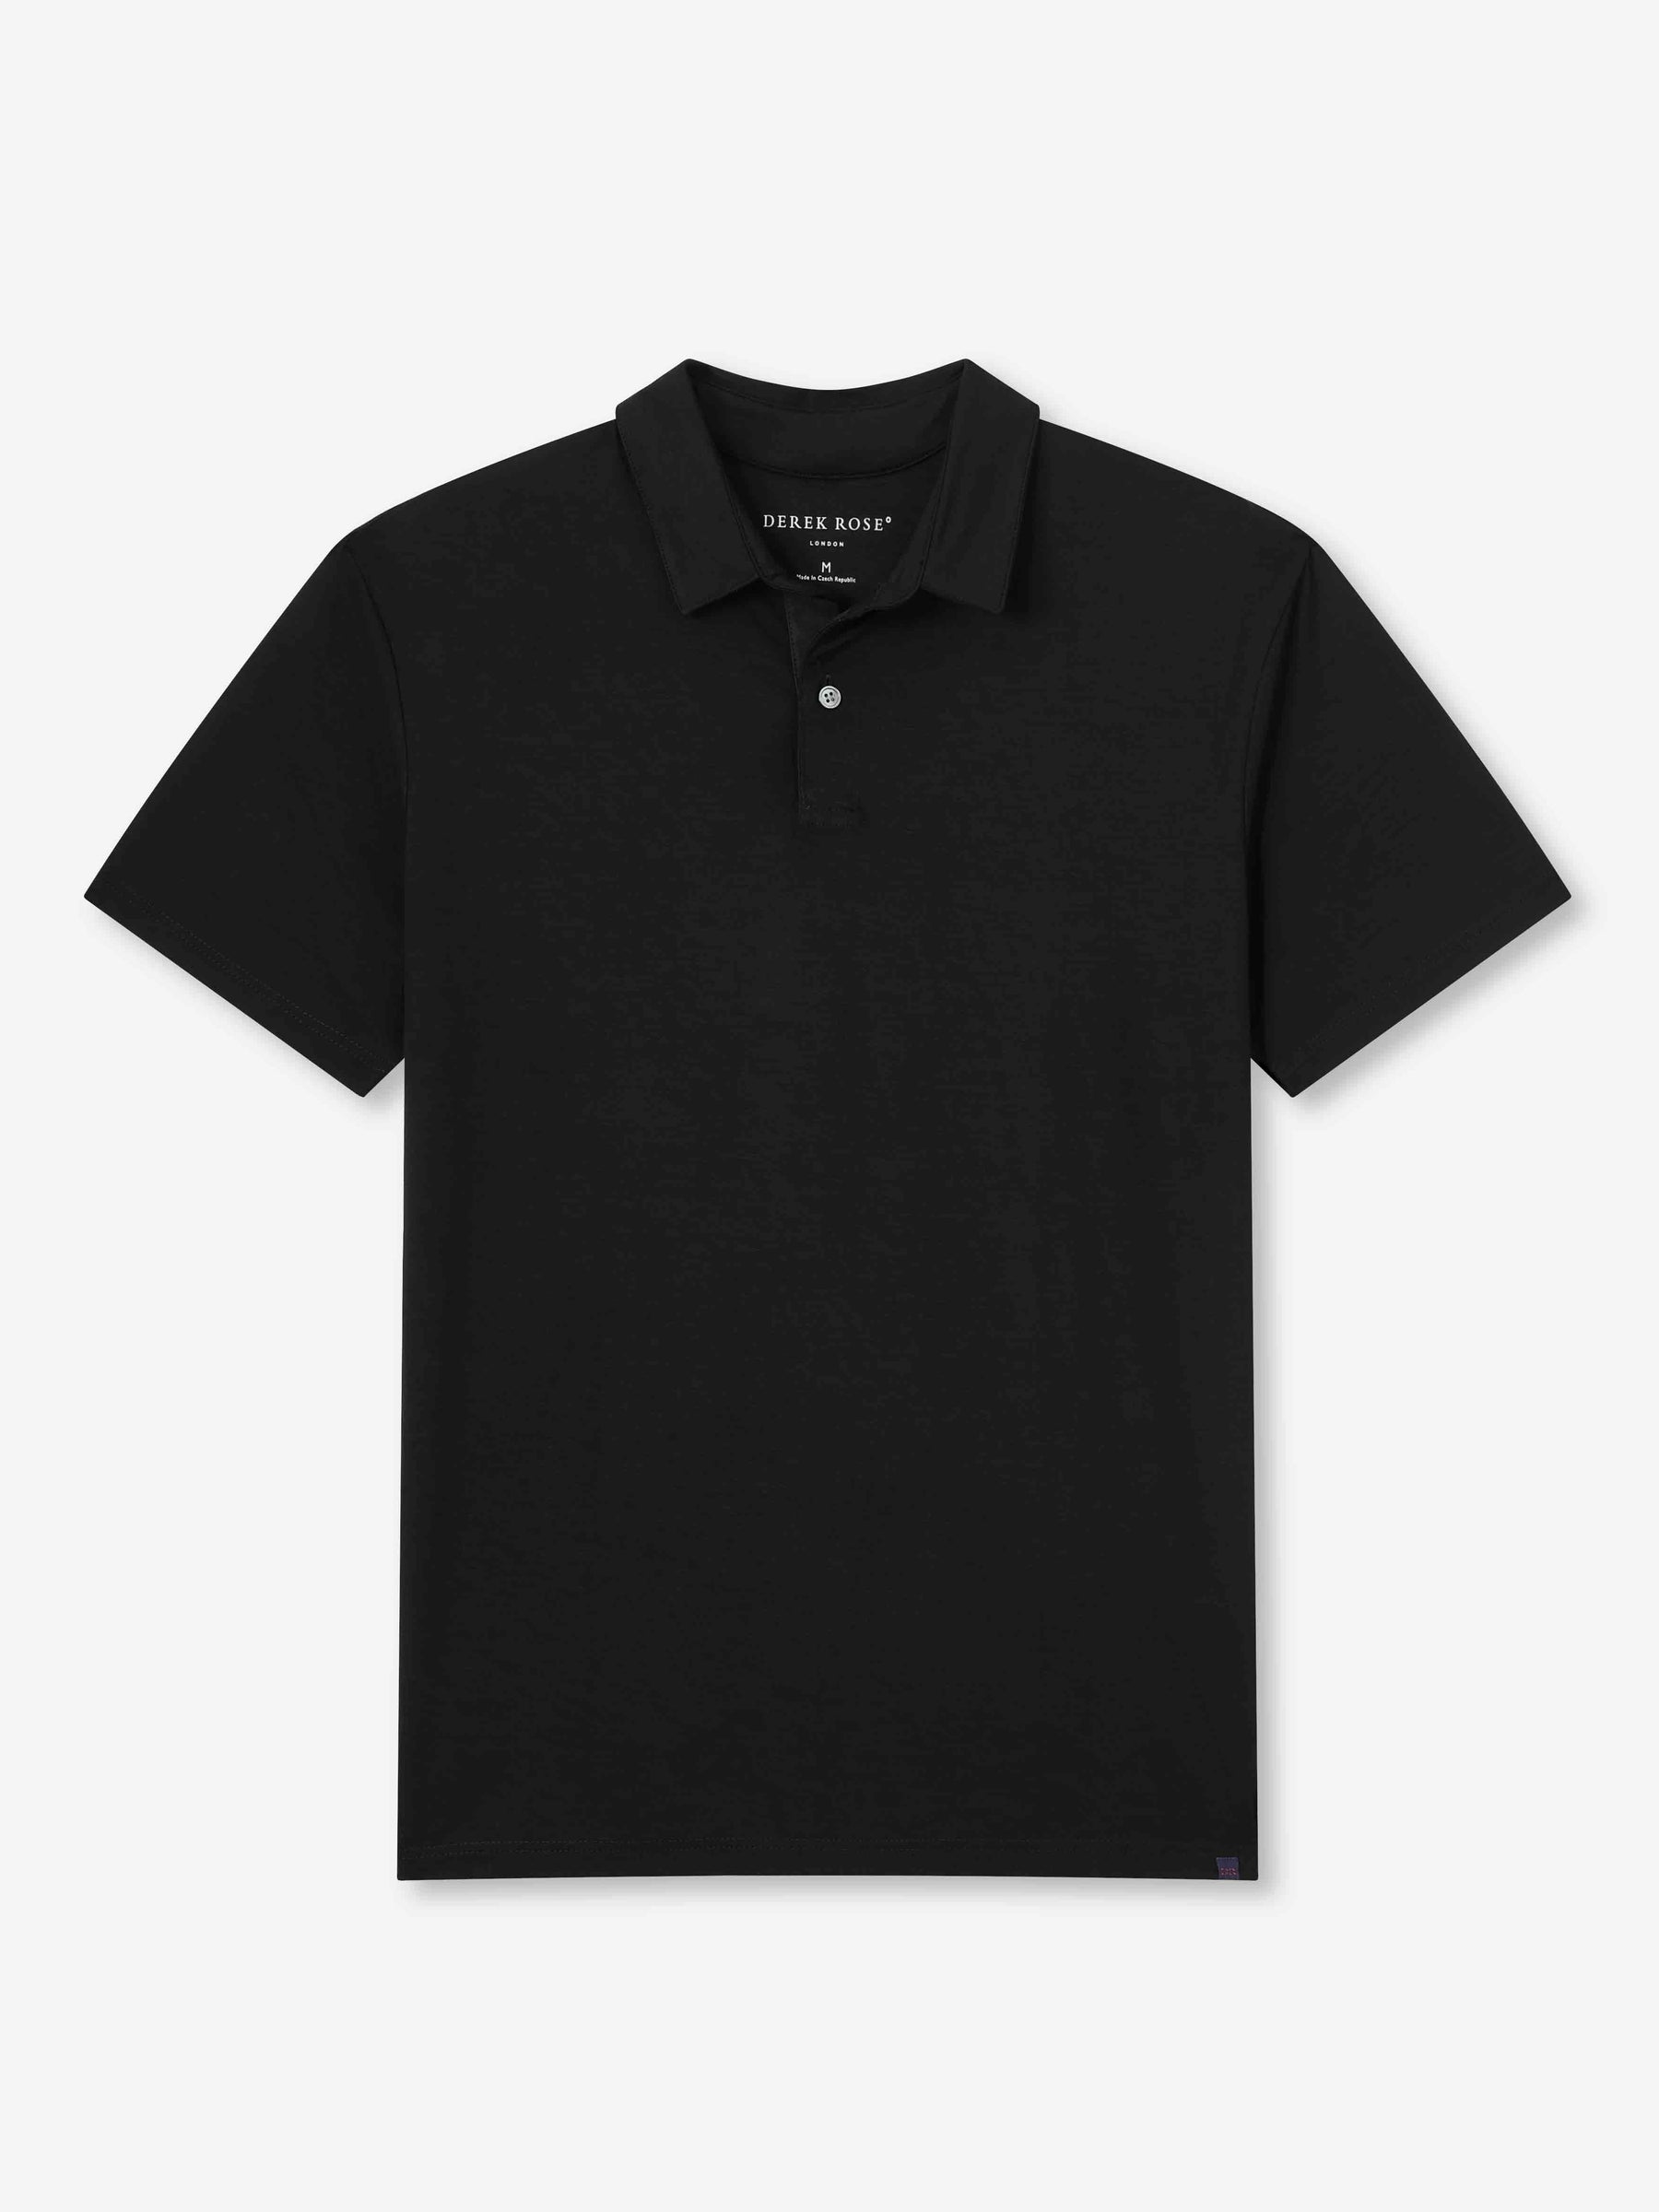 Men's Polo Shirt Basel Micro Modal Stretch Black